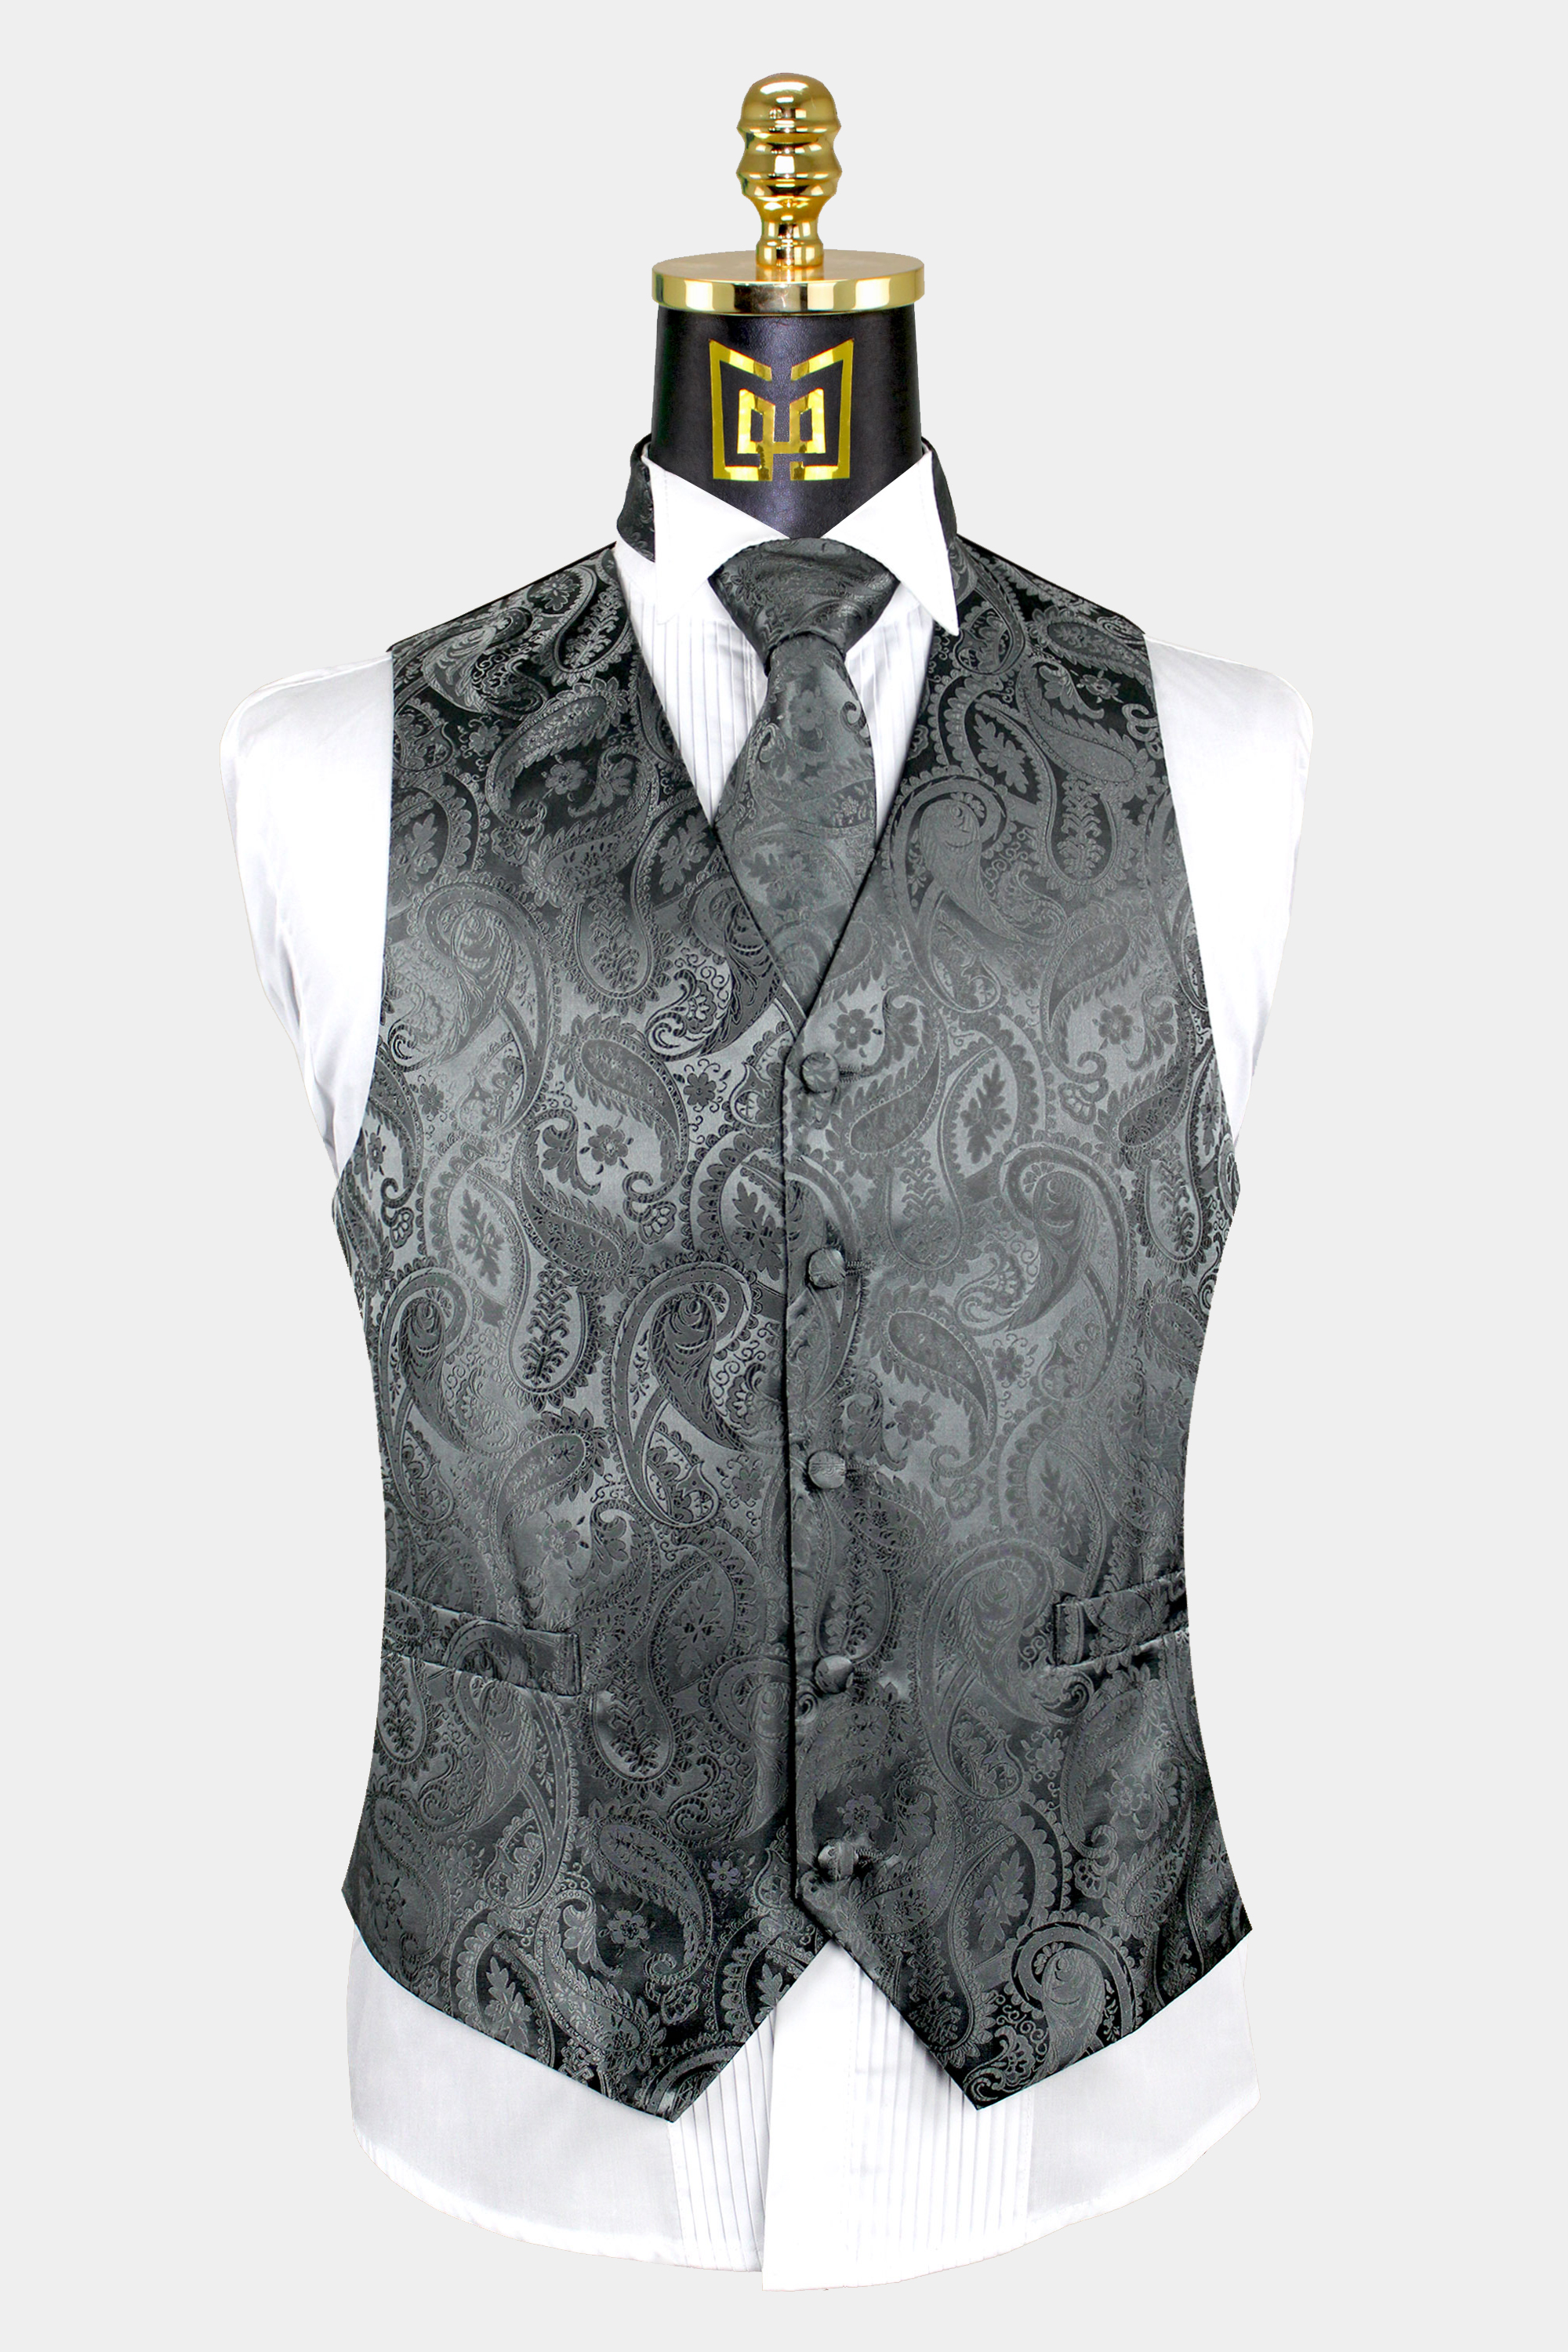 Charcoal-Grey-Paisley-Vest-and-Tie-Set-Groom-Wedding-Tuxedo-Vest-from-Gentlemansguru.com_